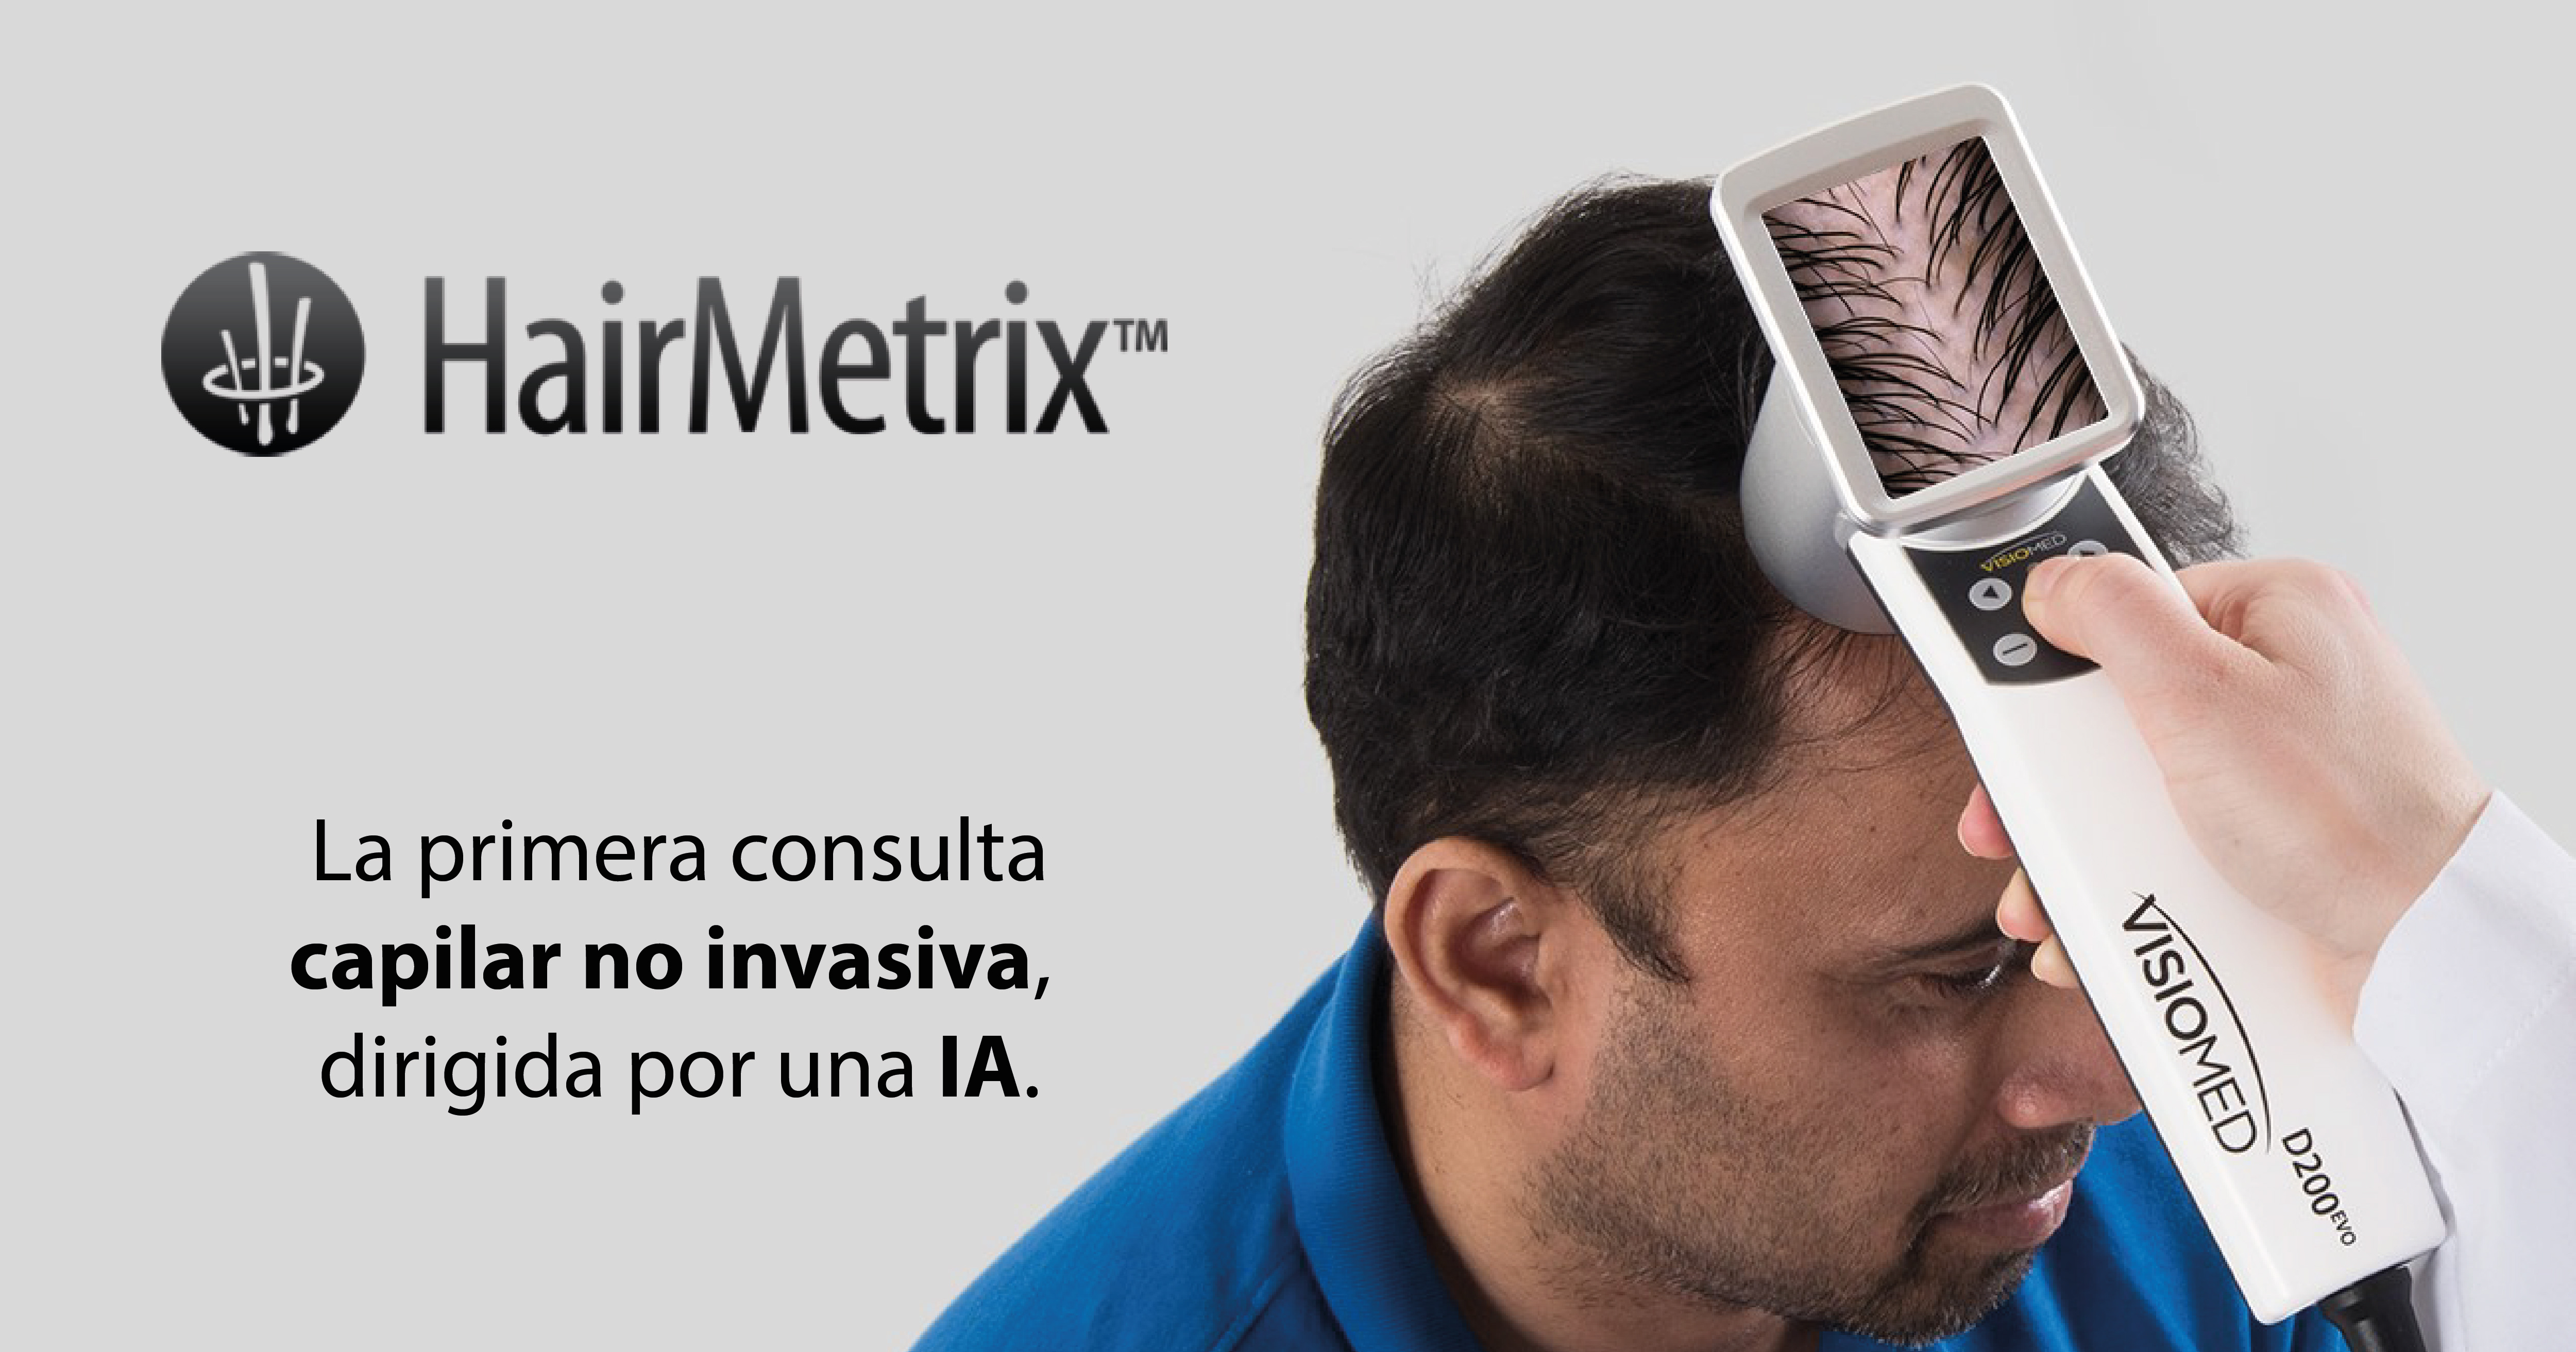 HairMetrix